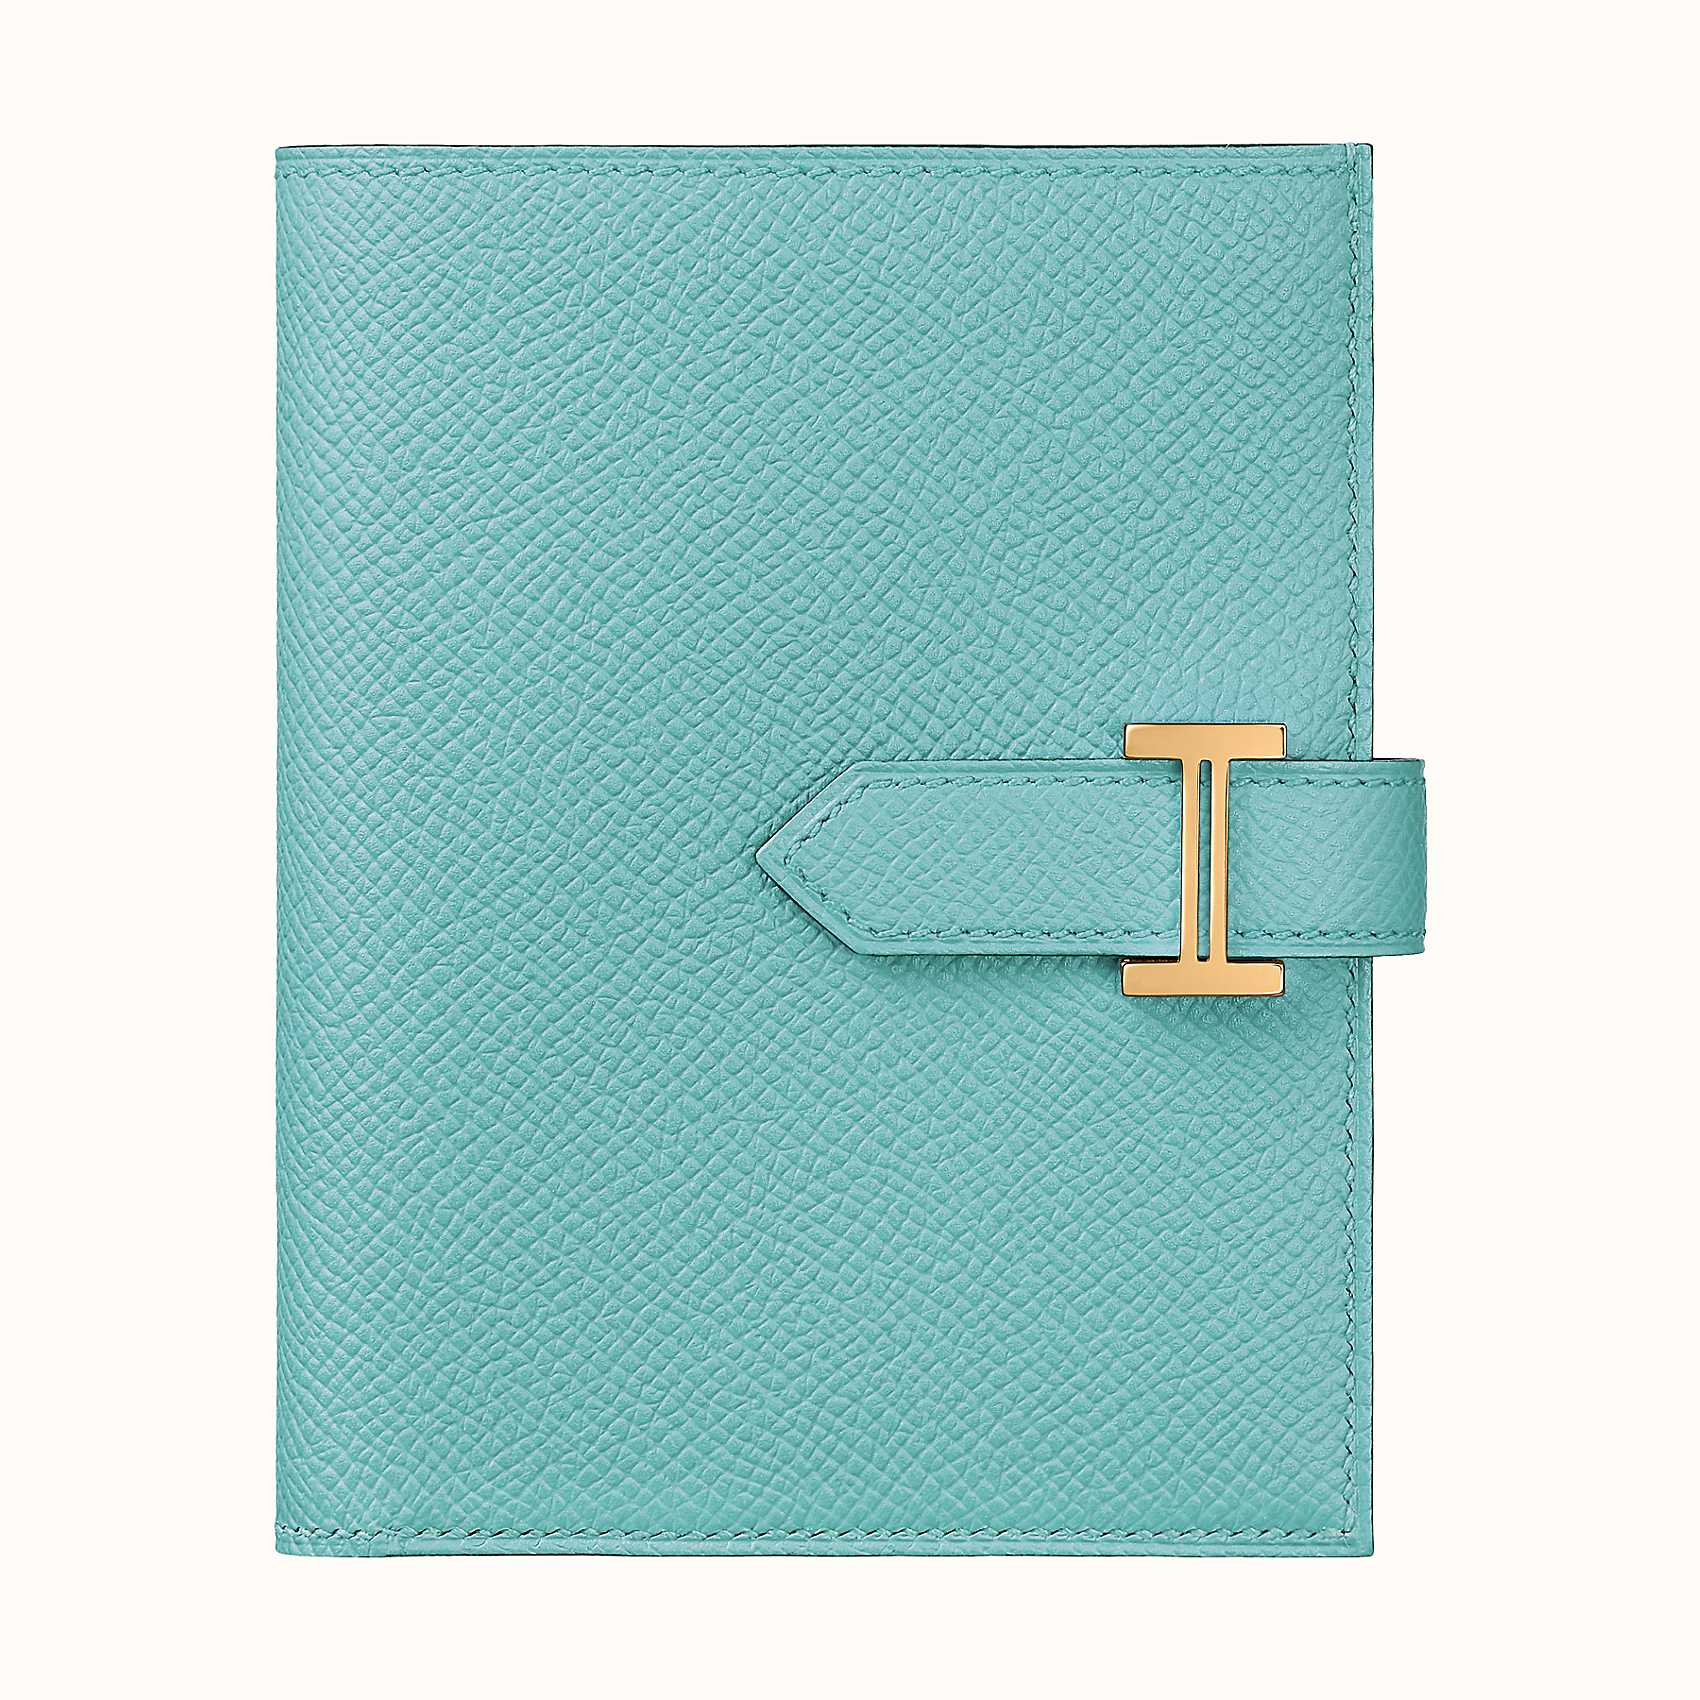 愛馬仕 Hermes Bearn compact wallet Epsom 3P Blue Atoll 瀉湖藍 短錢包